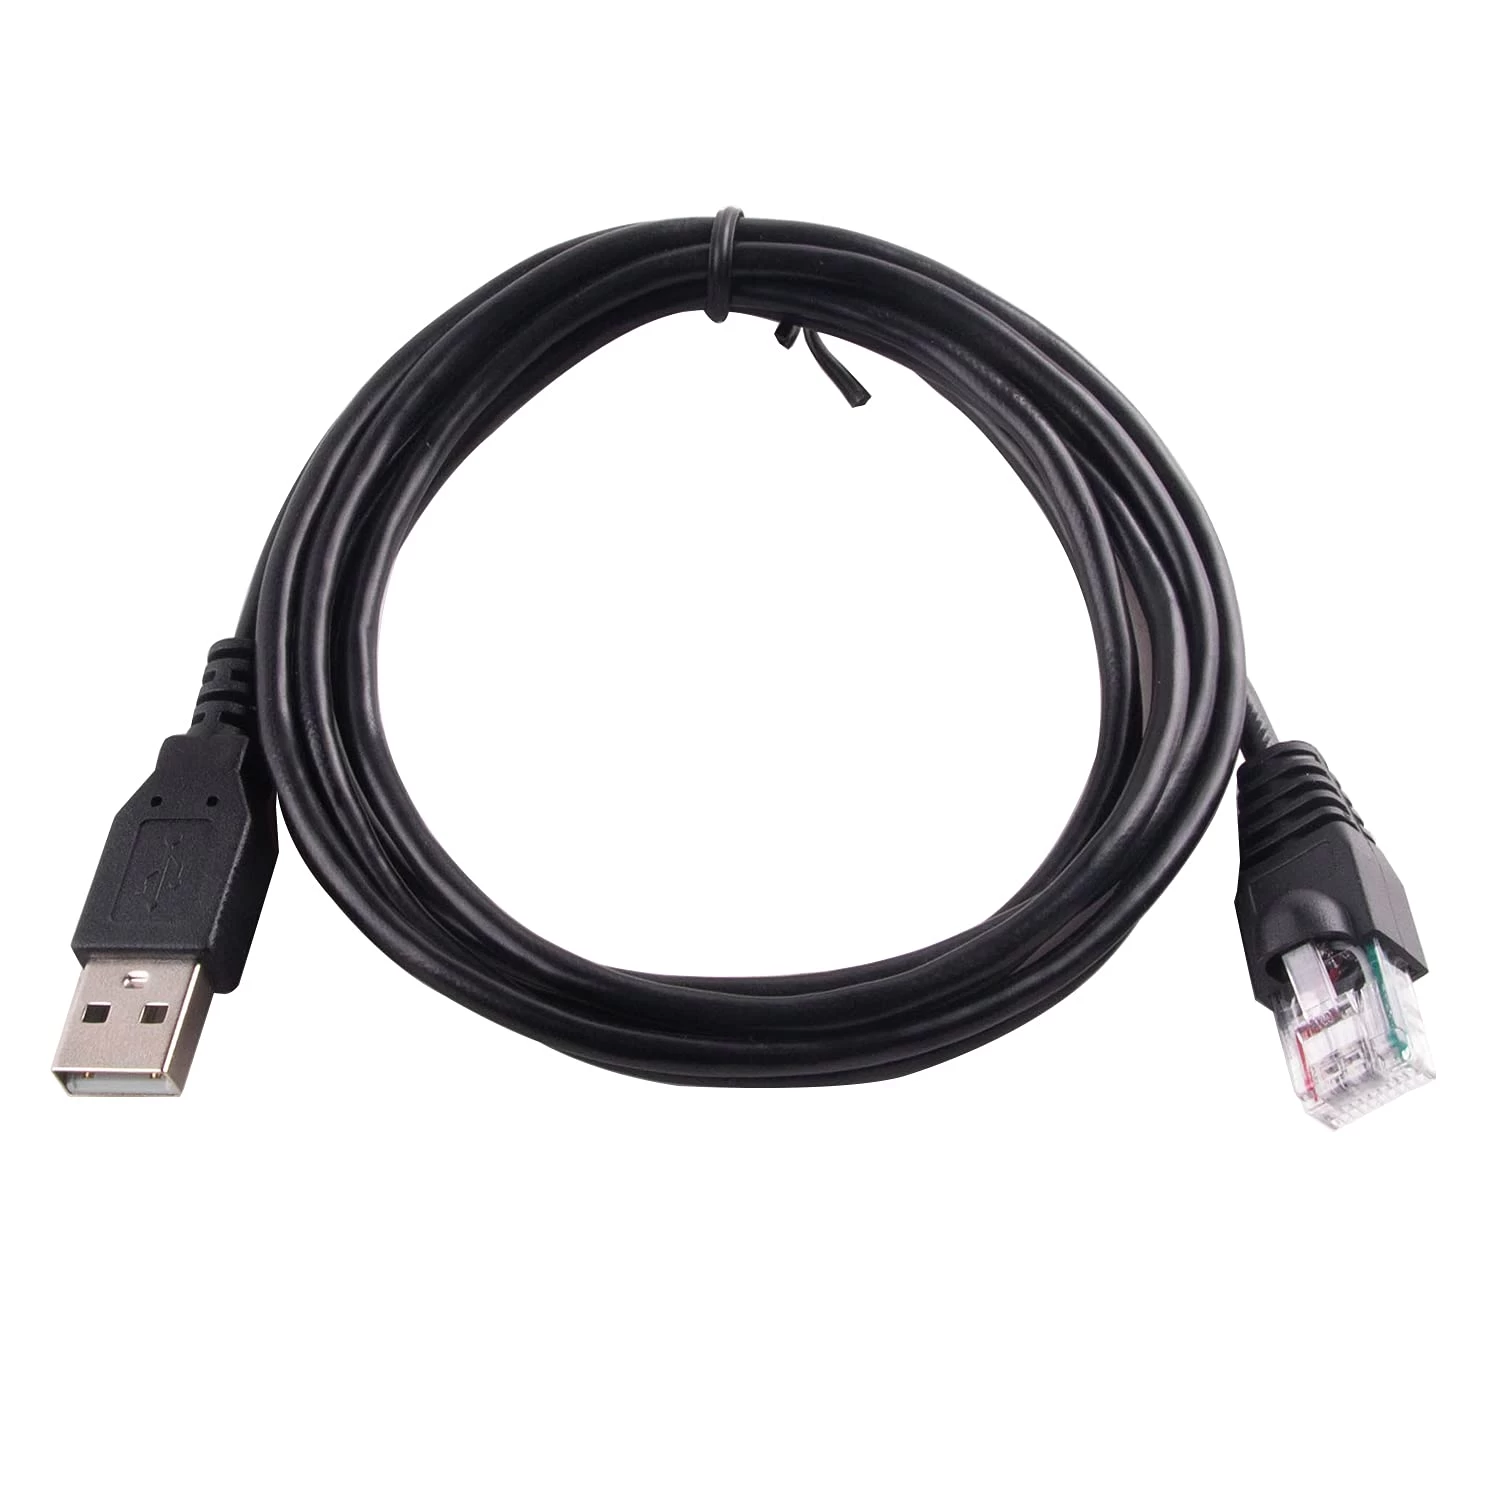 China APC-kabel USB naar RJ50-besturingskabel voor slimme UPS fabrikant